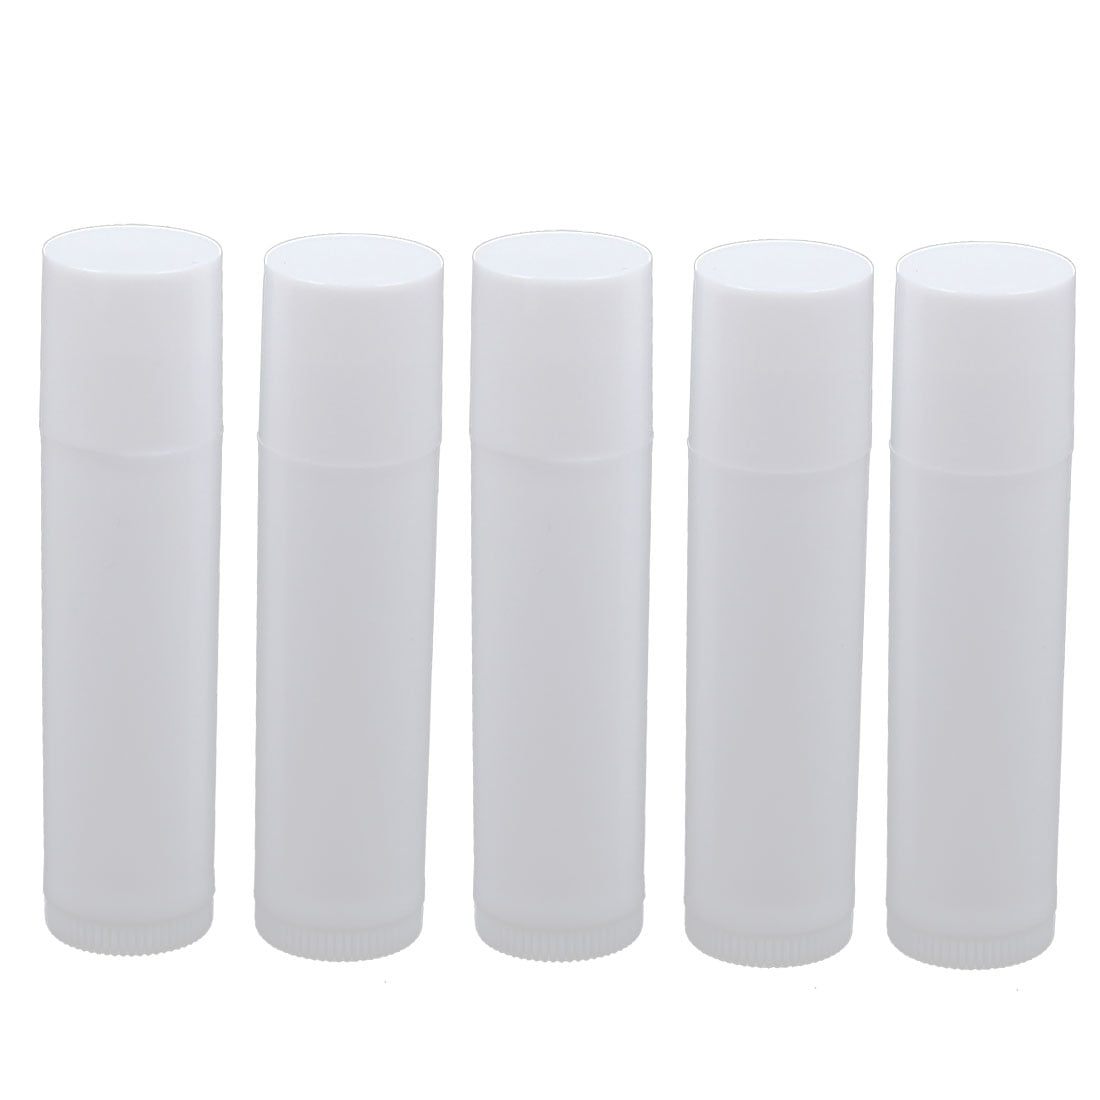 5pcs White Empty DIY Lip Balm Tube Lipstick Container Cosmetic Case Box ...